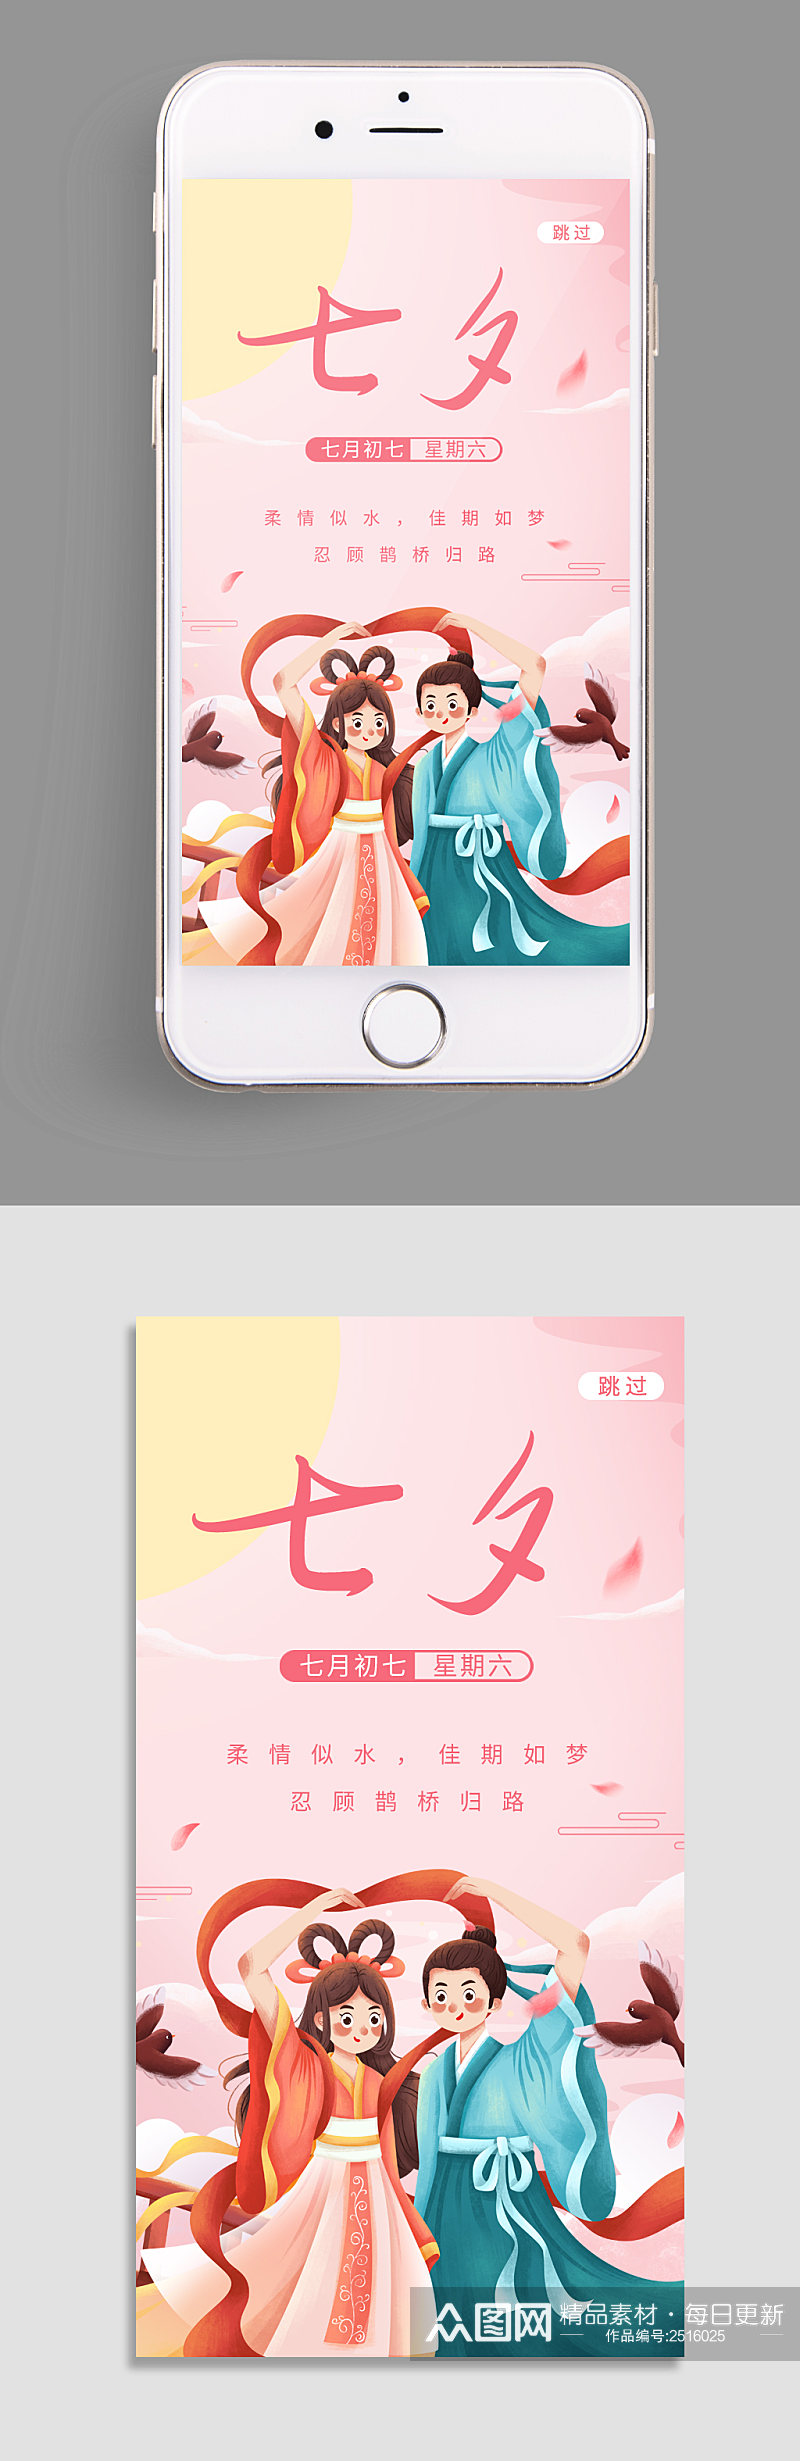 七夕节app启动页素材